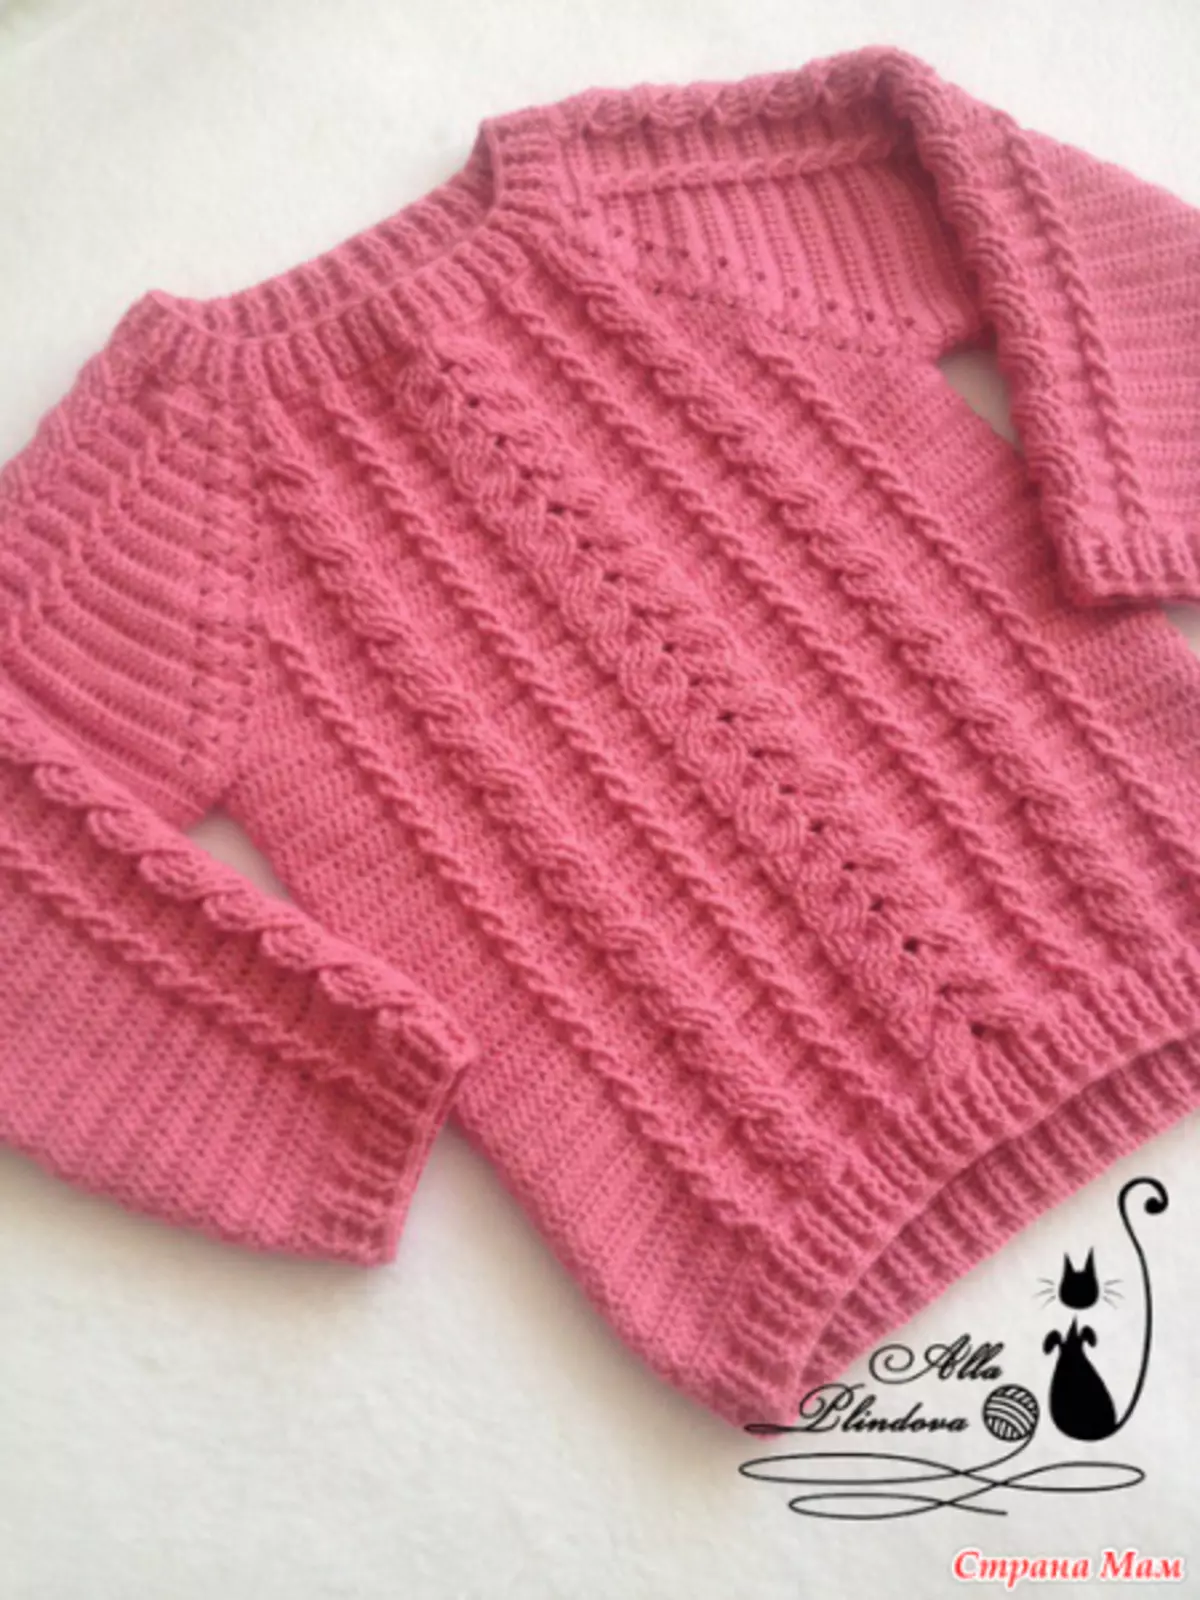 Crochet Sweater: Skema en beskriuwing foar begjinners mei fideo